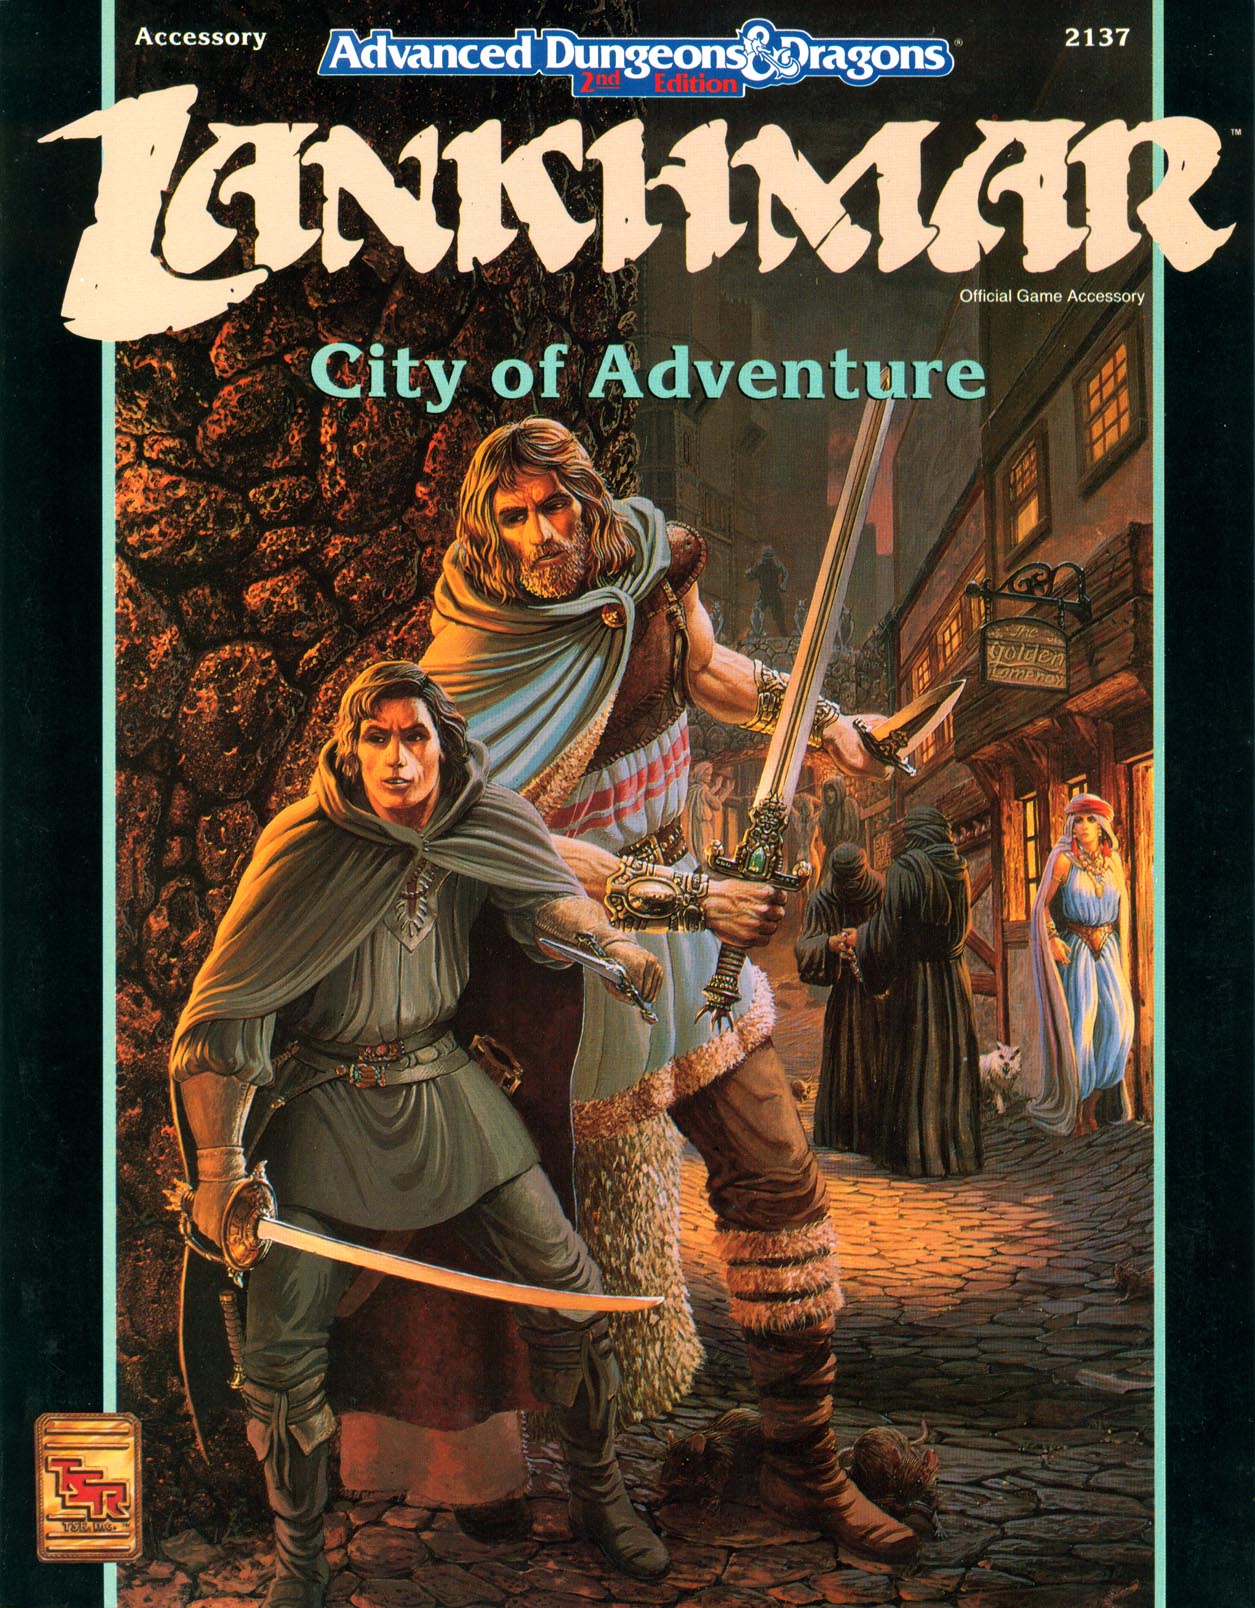 Lankhmar: City of Adventure (2nd Ed.)Cover art